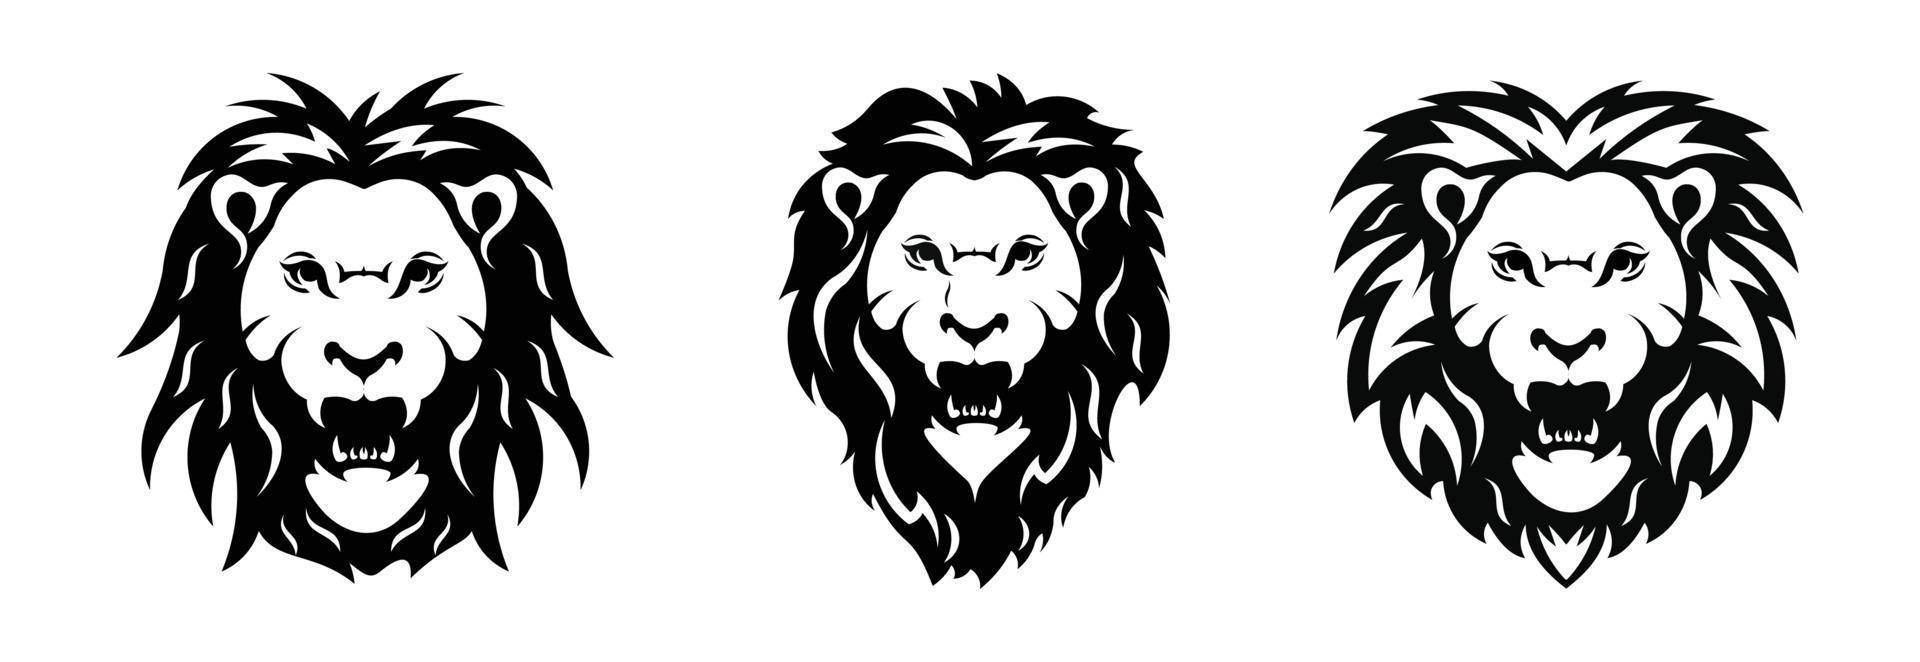 testa di leone silhouette set.lion sagome di animali selvatici. buon uso per simbolo, logo, icona web, mascotte. vettore